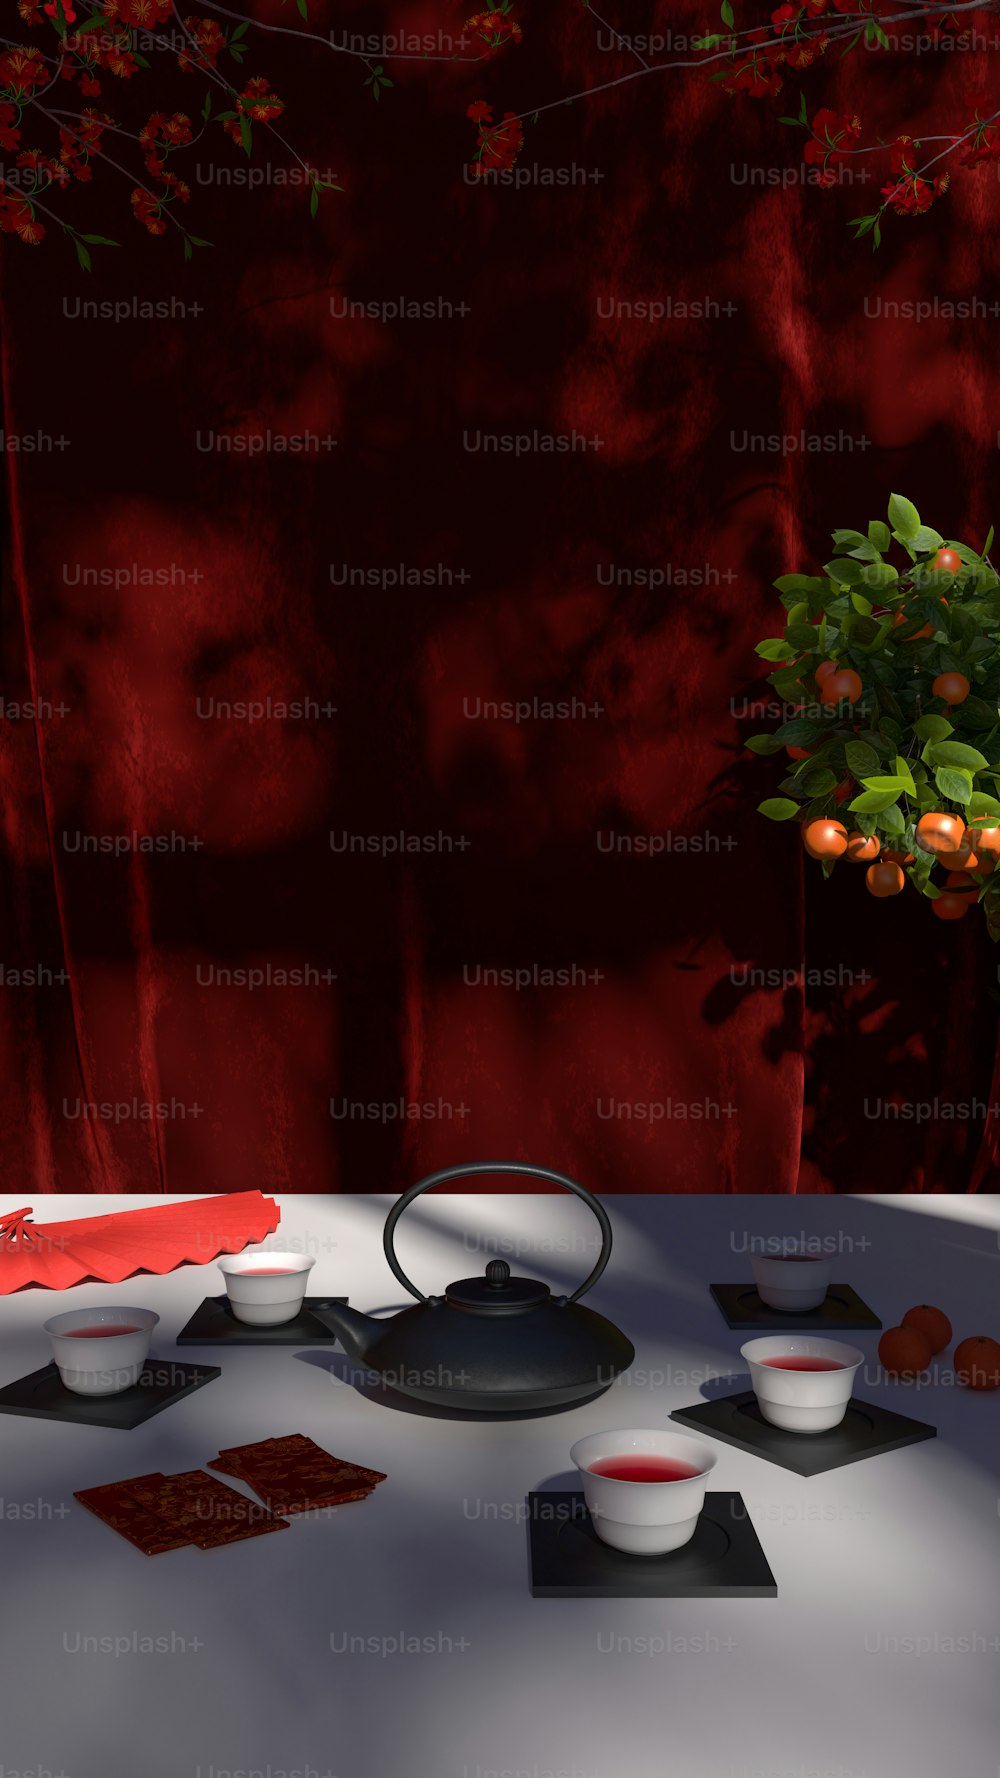 オレンジでいっぱいの花瓶の隣に食べ物のボウルをトッピングしたテーブル